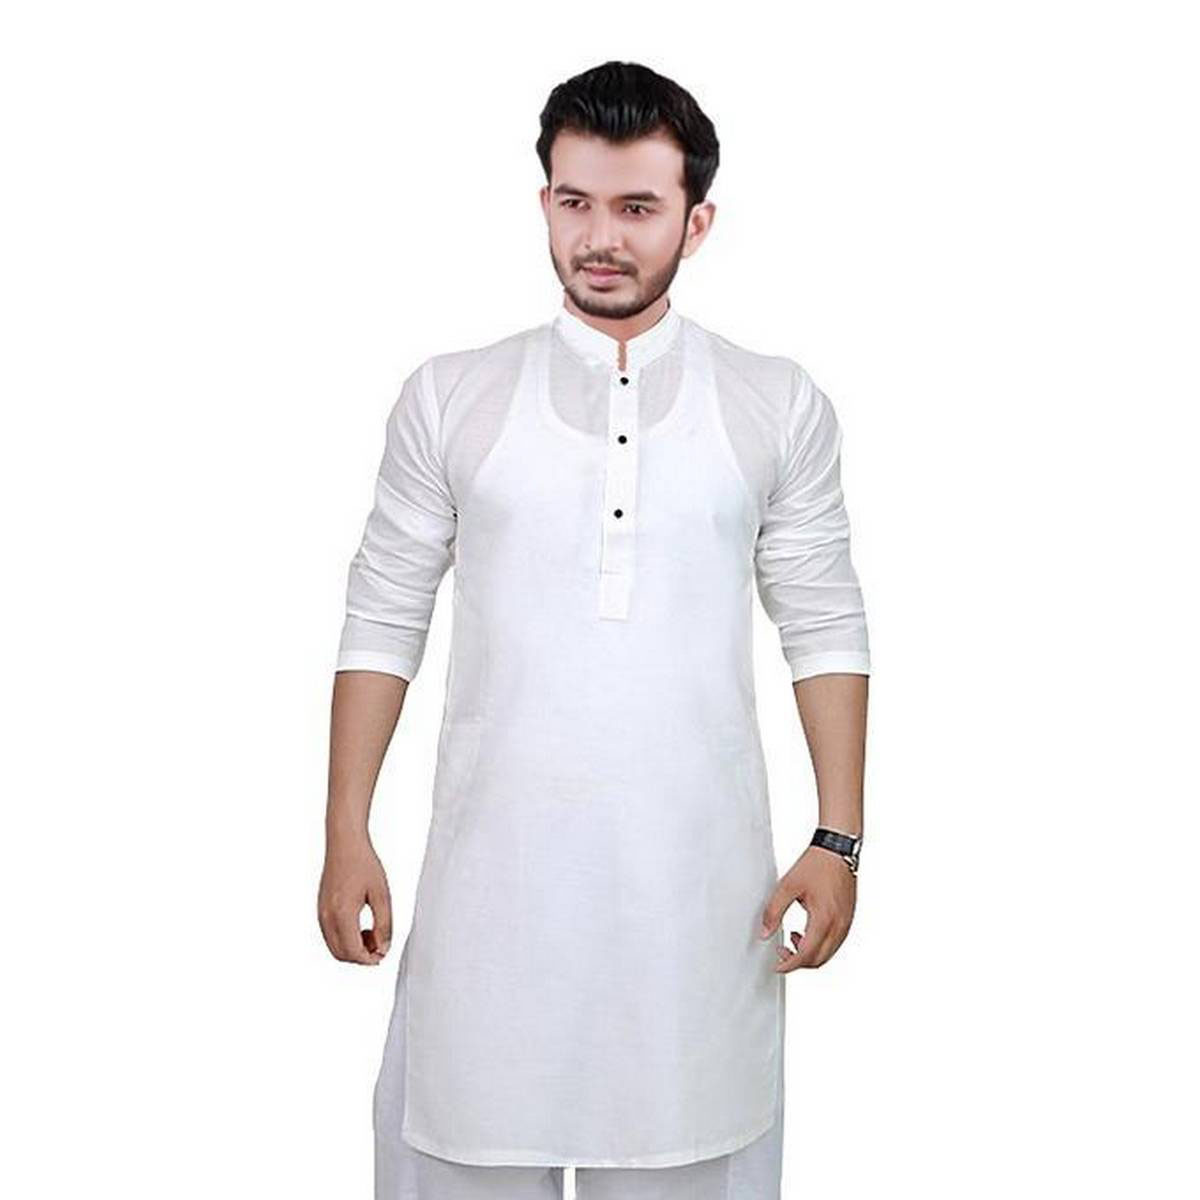 সাদা পাঞ্জাবি ডিজাইন - white panjabi design - কালারফুল পাঞ্জাবি ডিজাইন - Colorful Punjabi Designs - NeotericIT.com